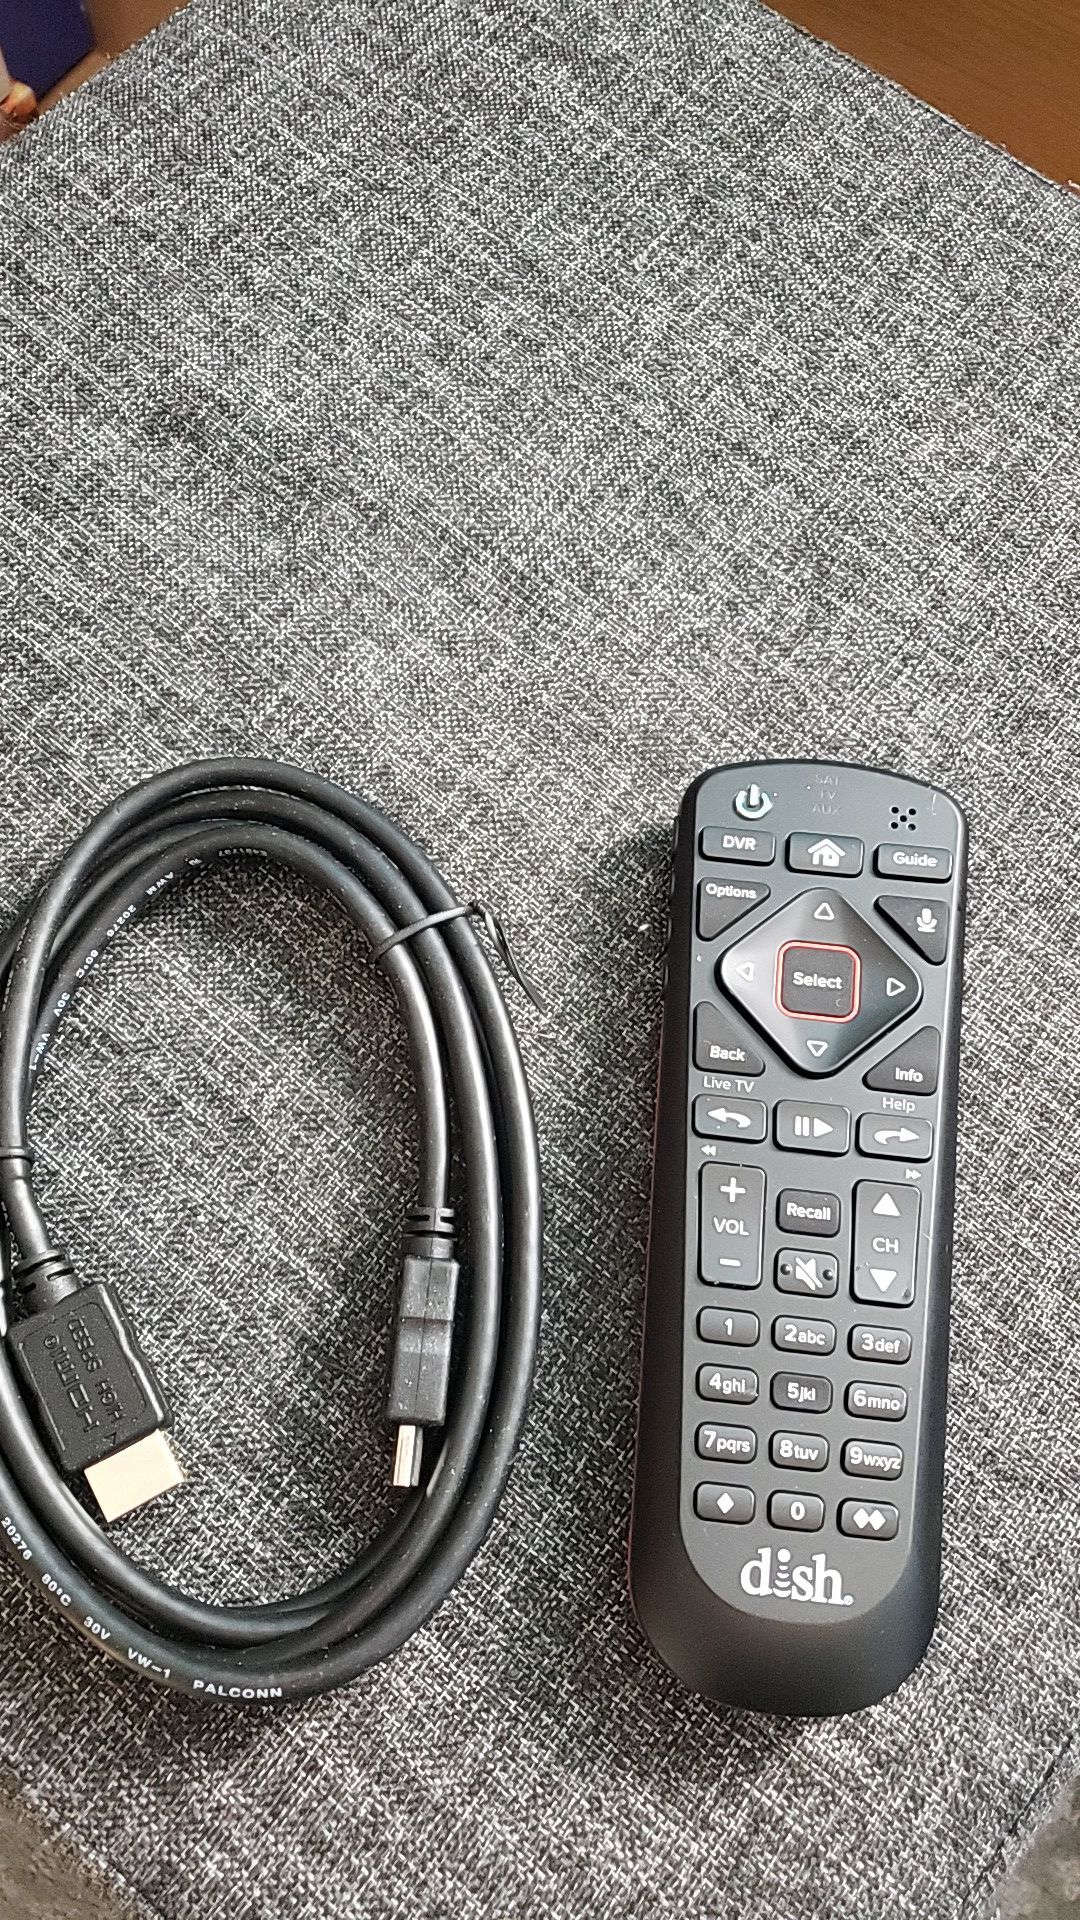 Universal Dish Remote & HDMI Cable